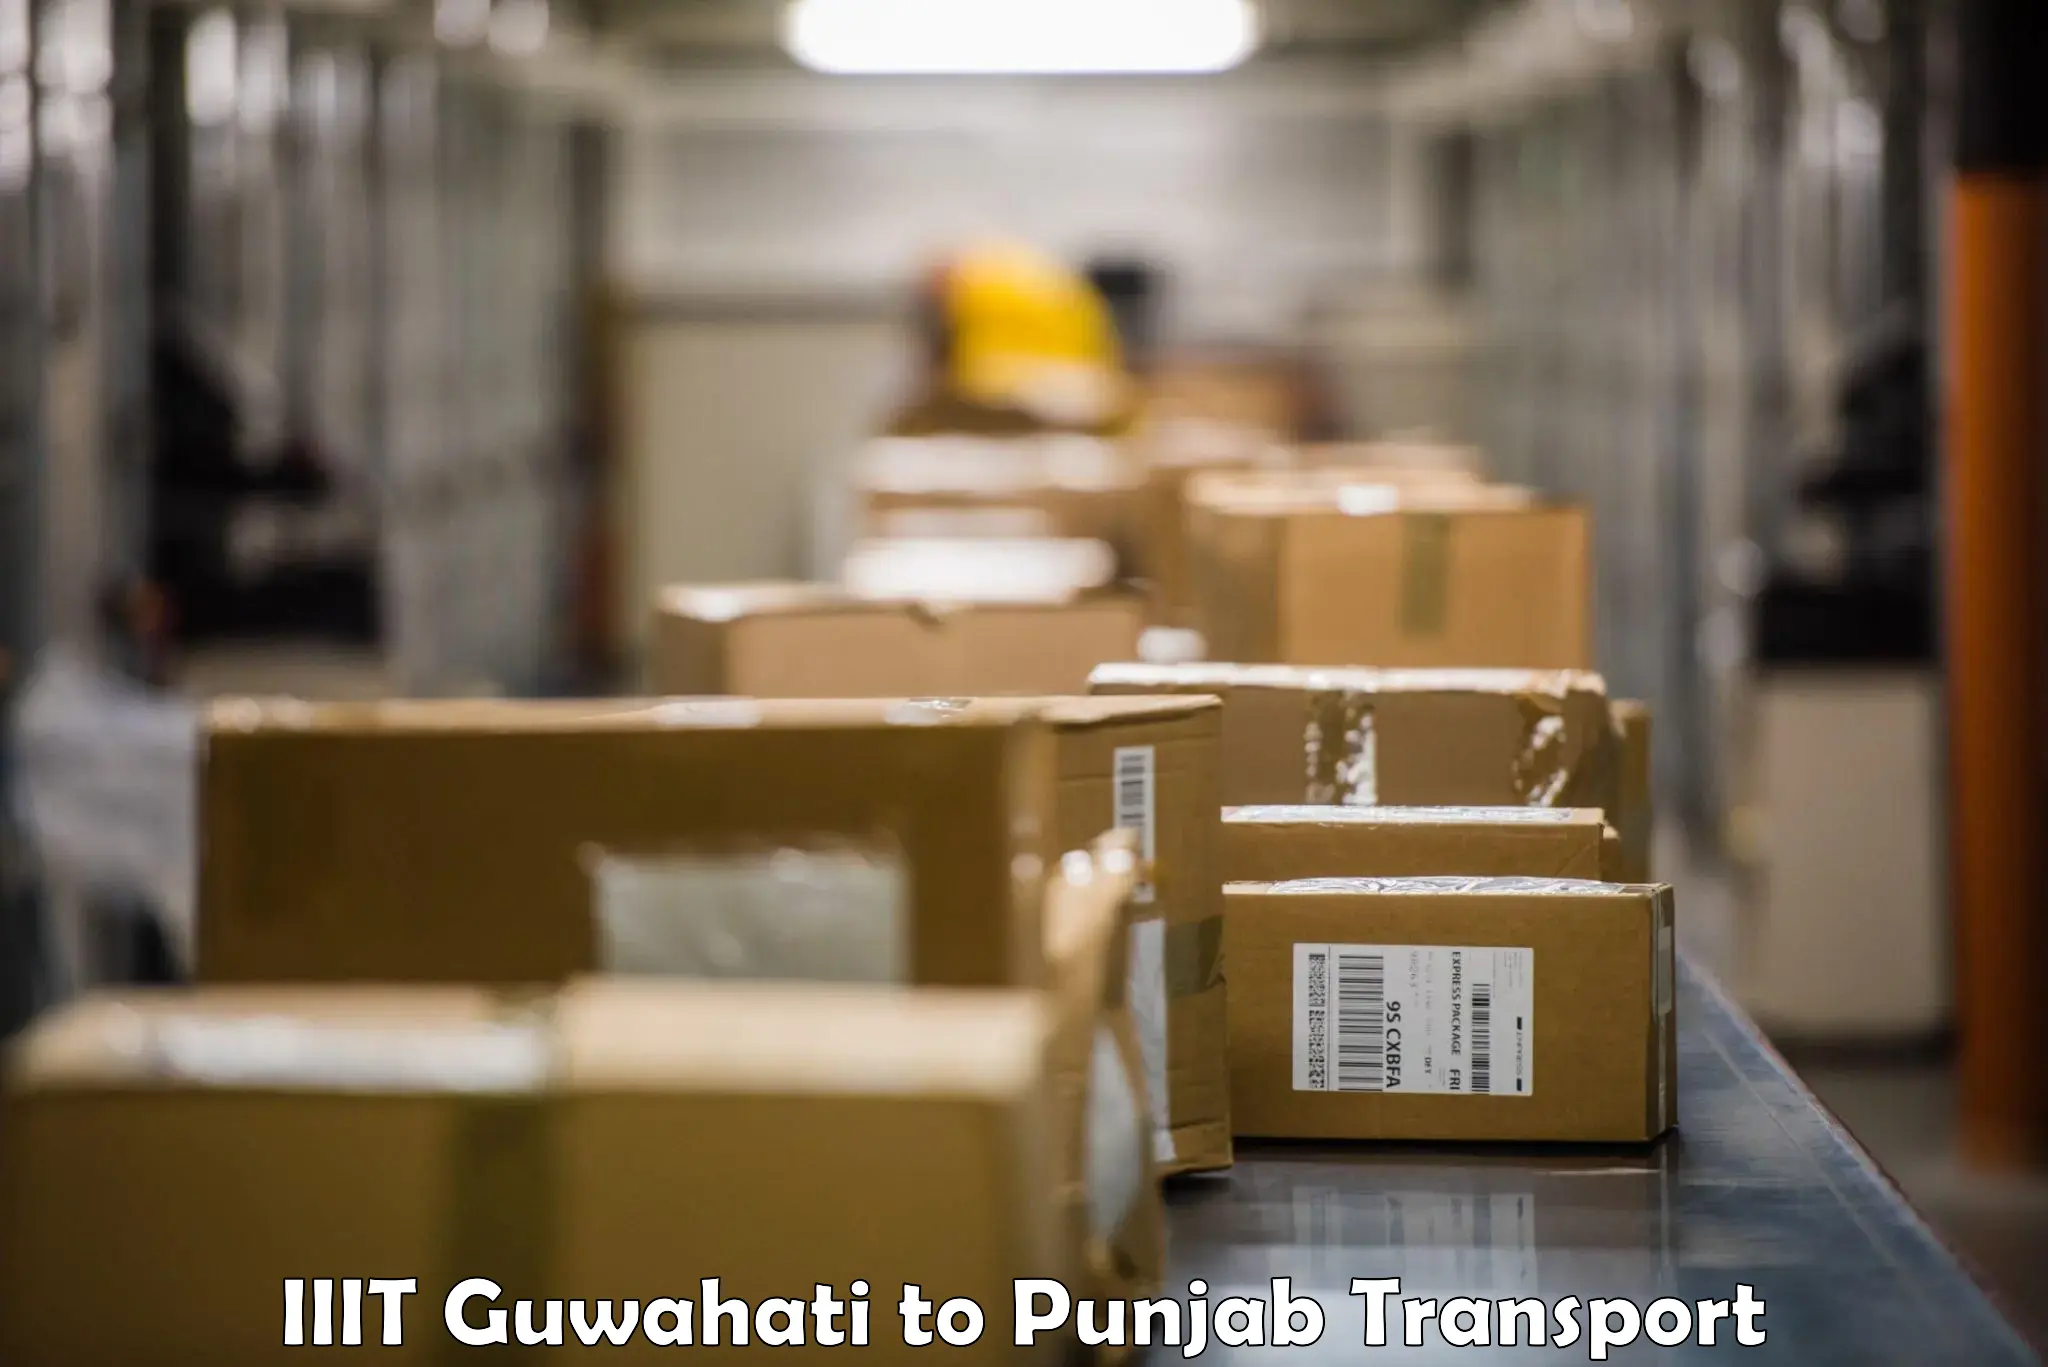 Transportation services IIIT Guwahati to Punjab